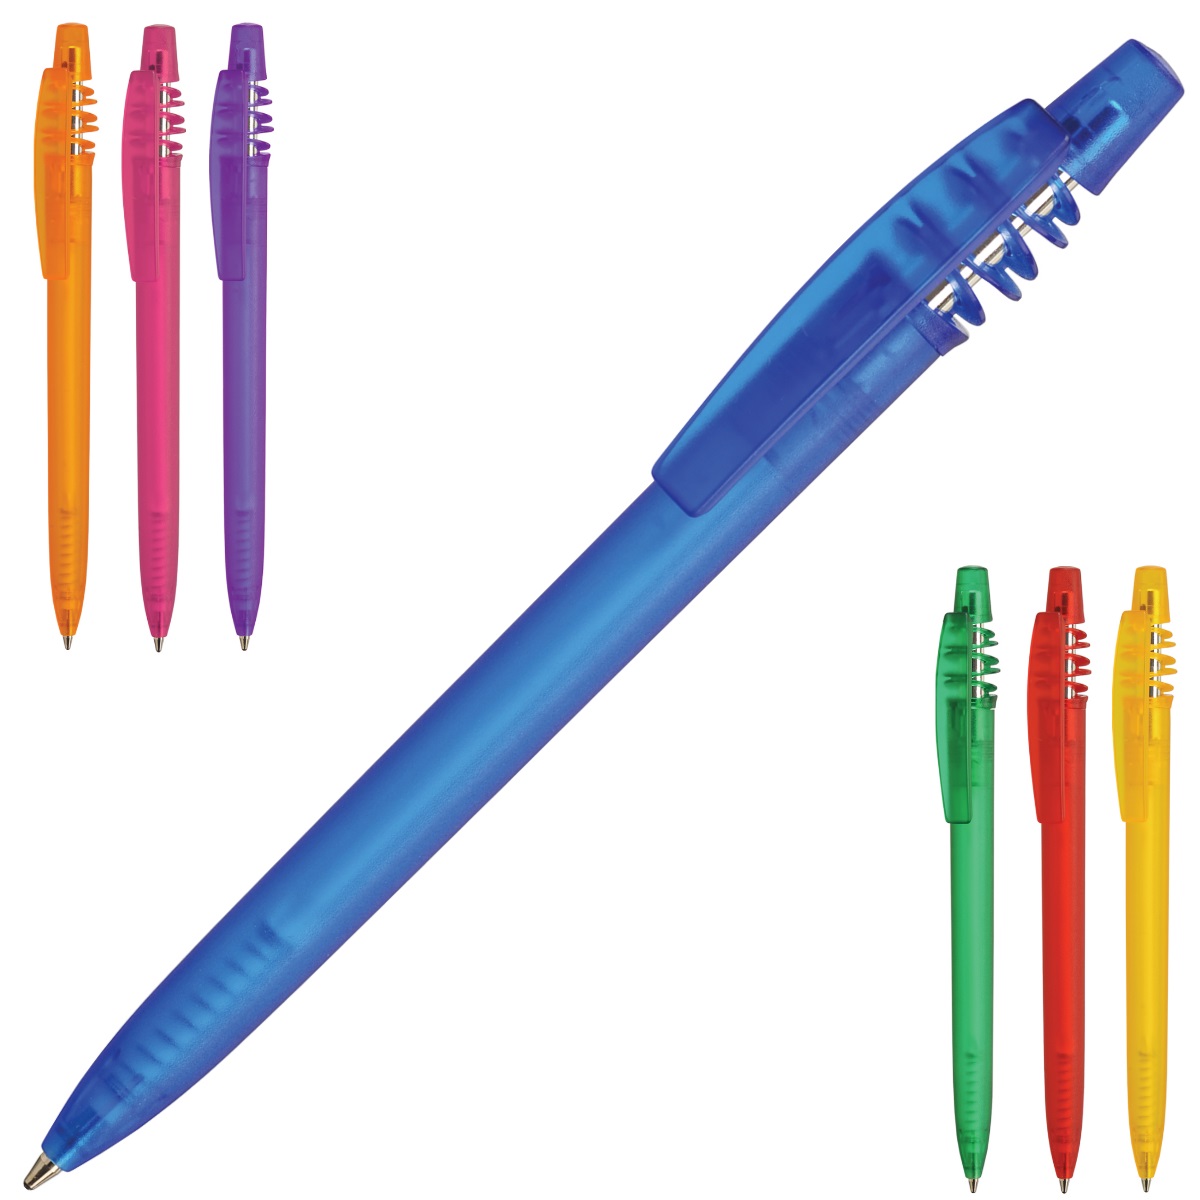 Igo Colour Ballpoint Pen